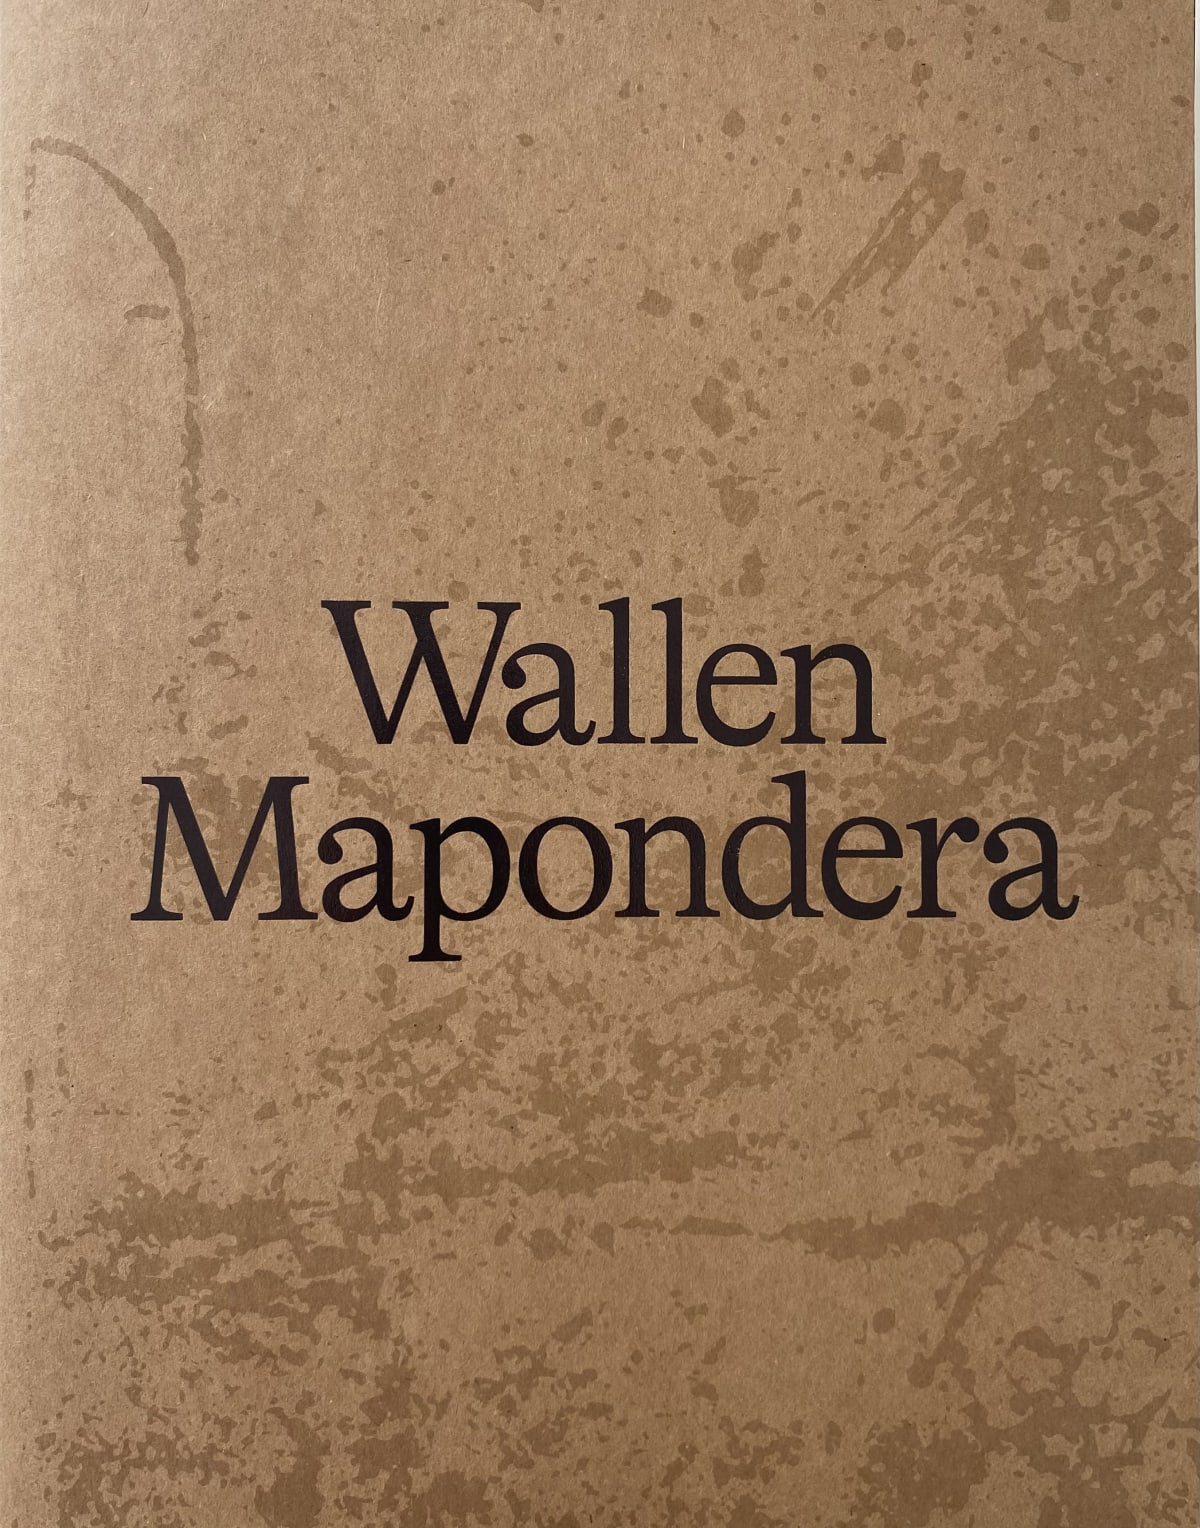 Wallen Mapondera